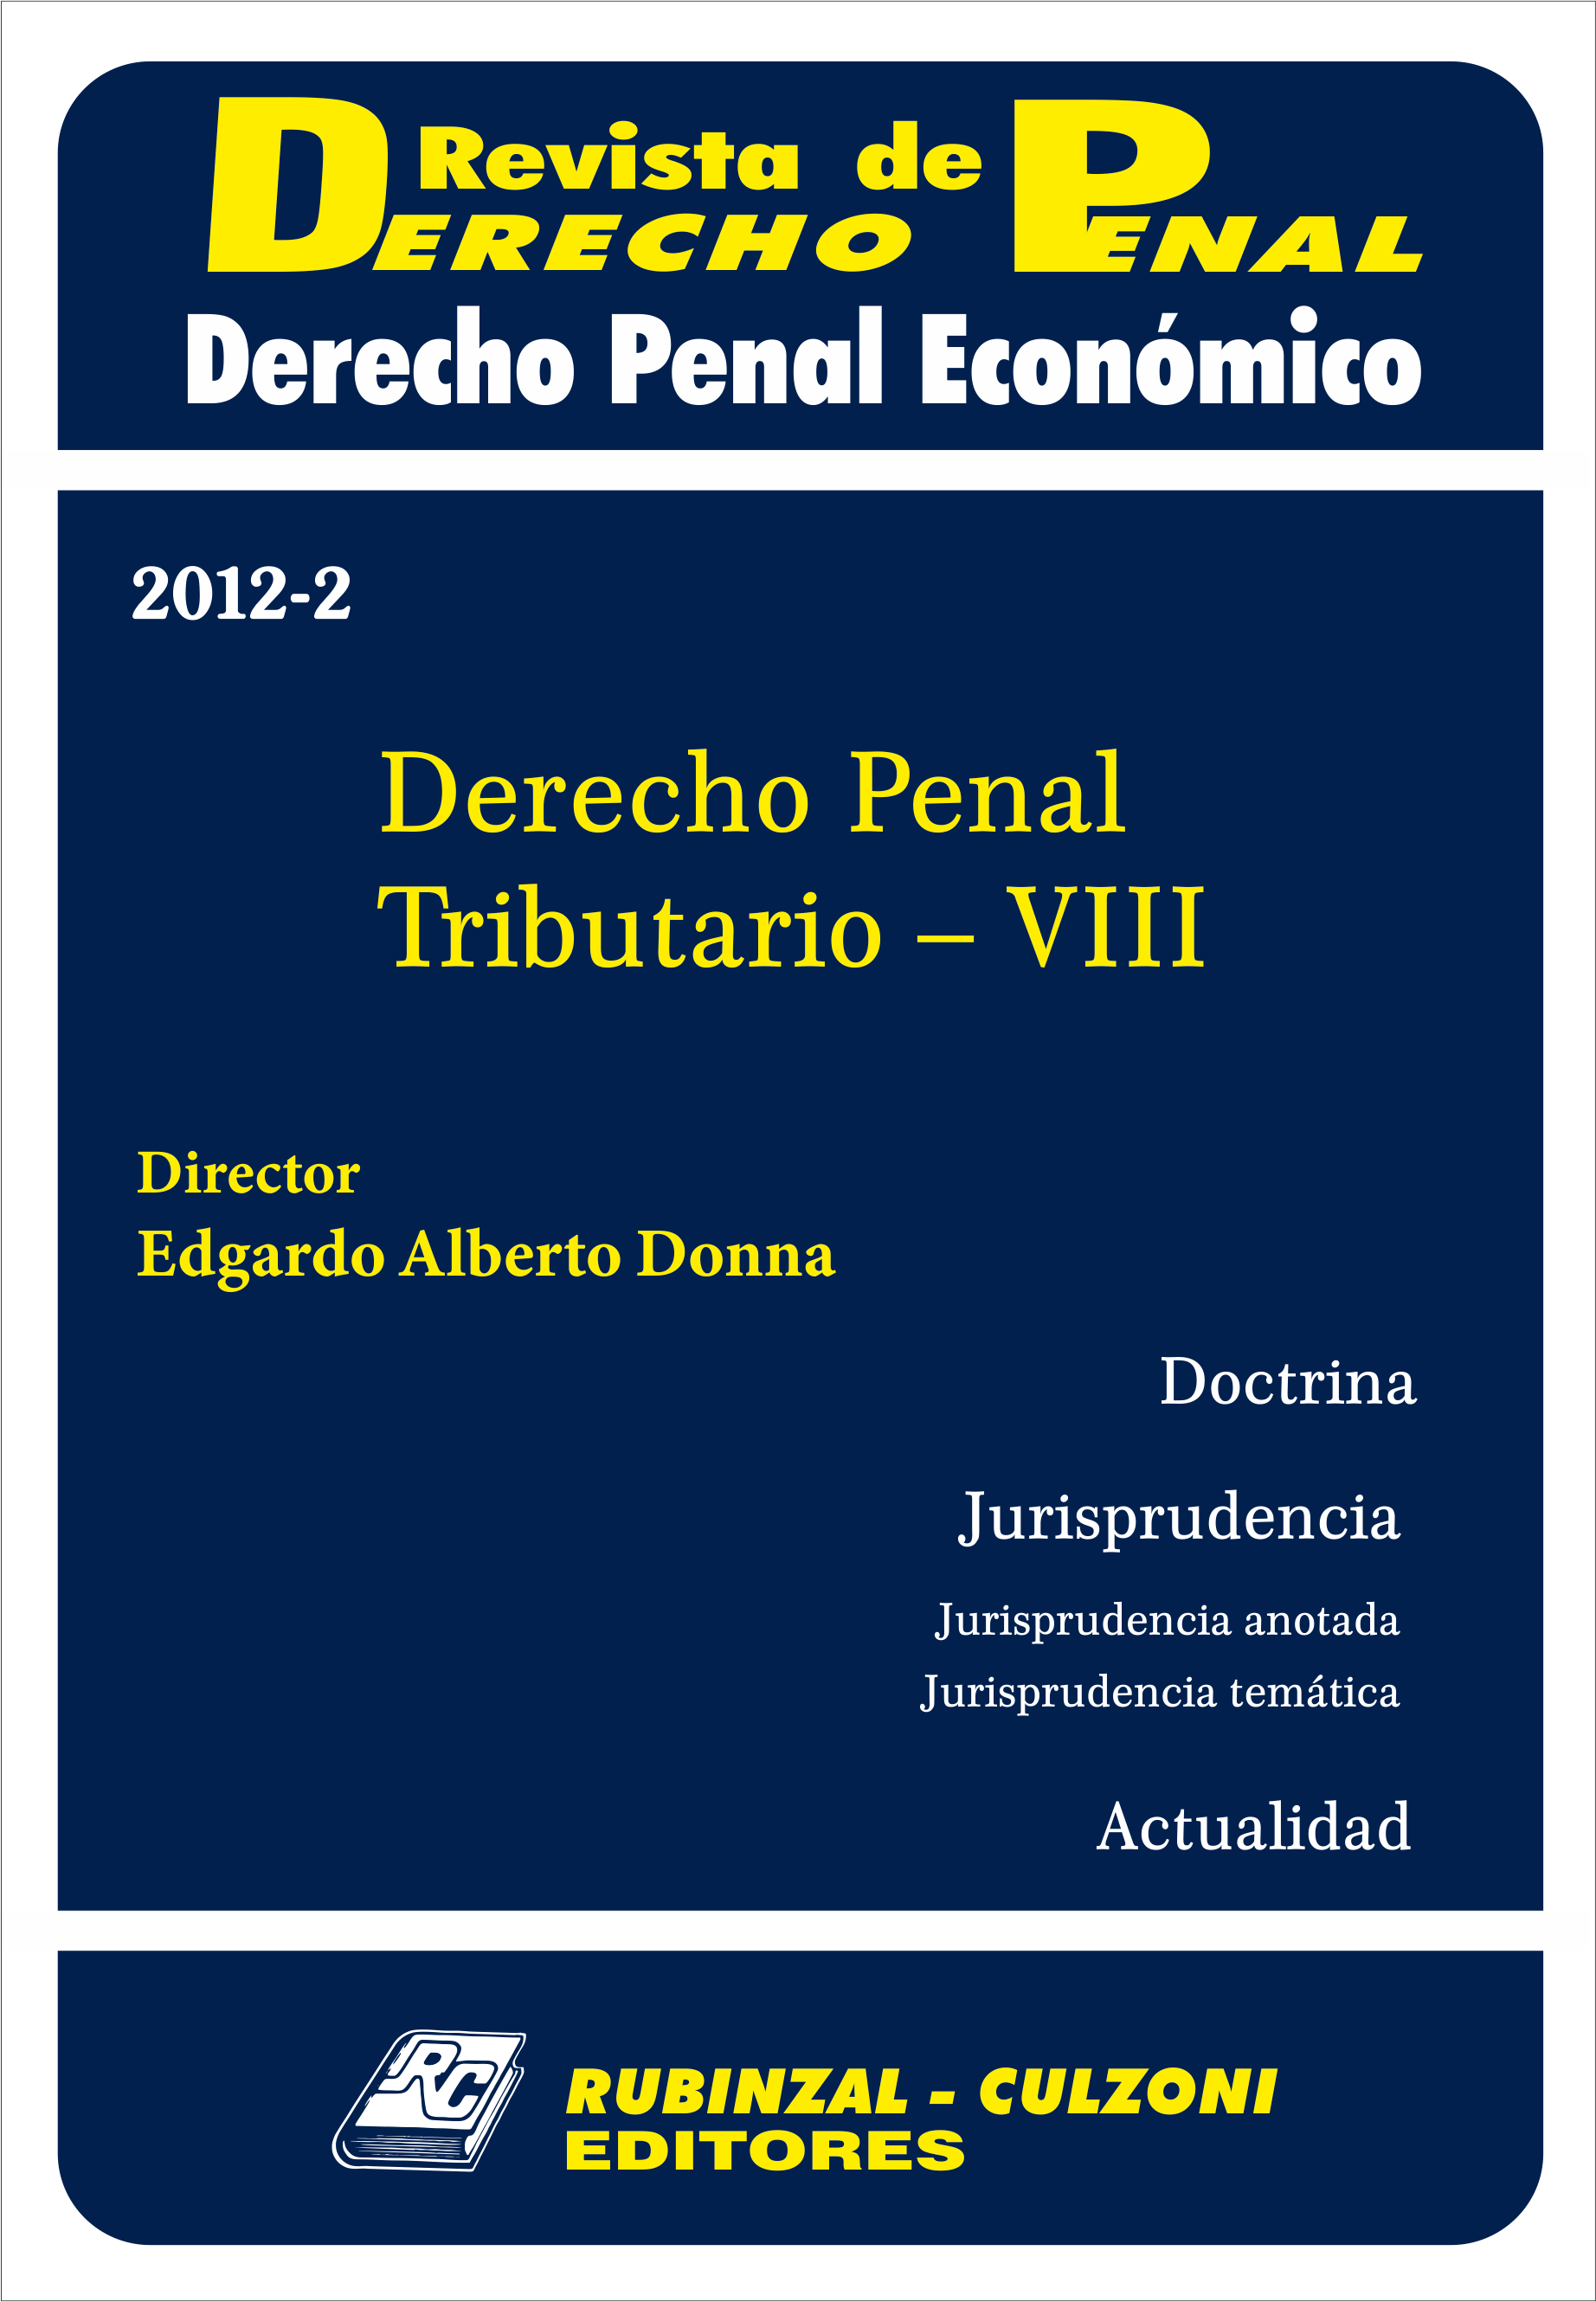 Revista de Derecho Penal Económico - Derecho Penal Tributario - VIII